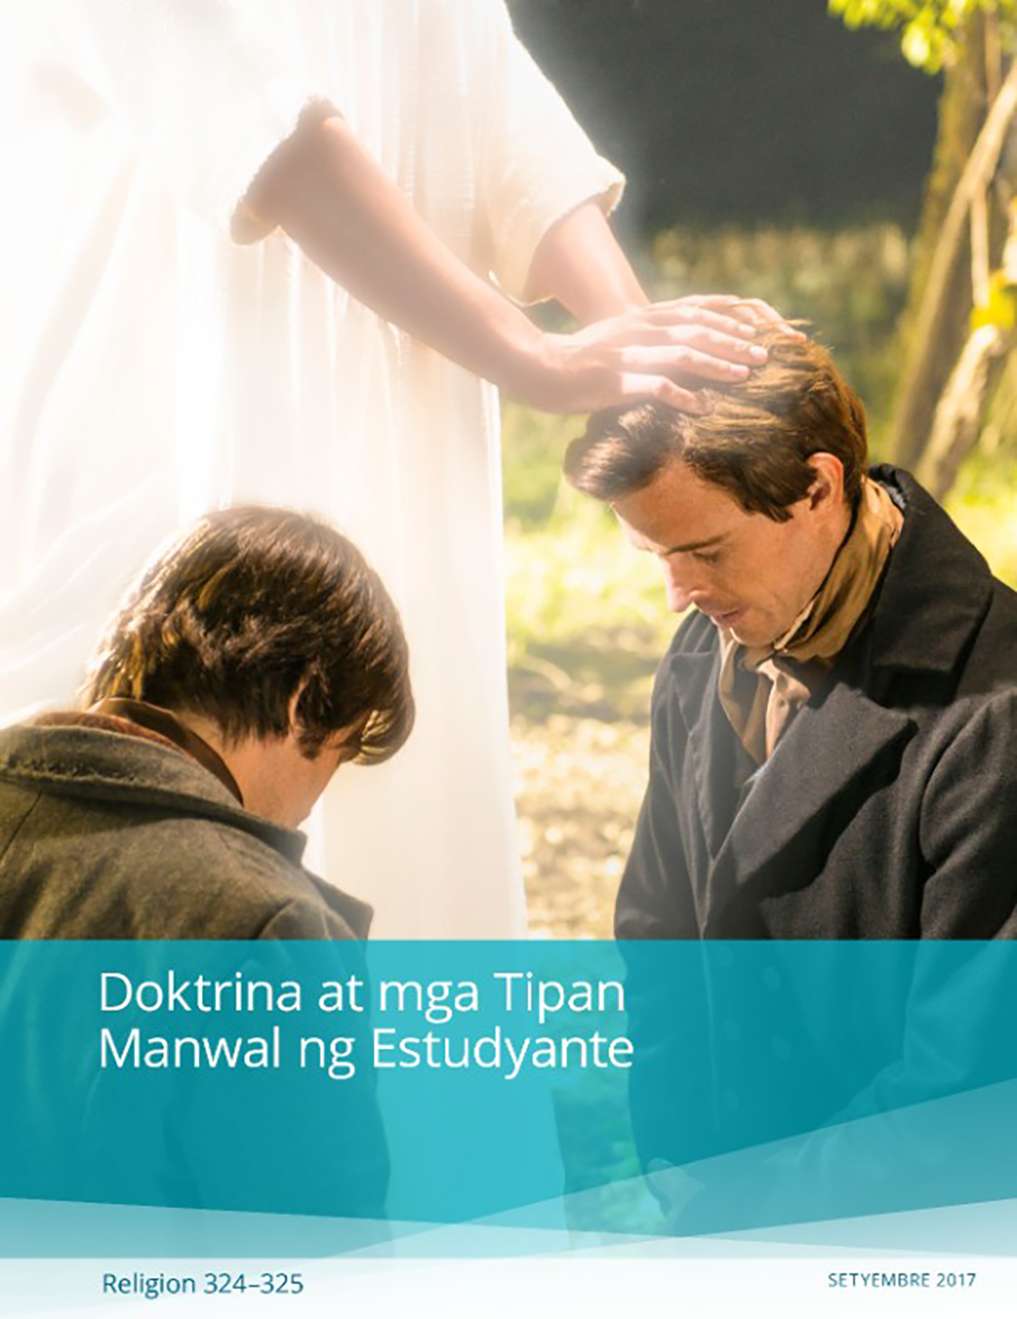 Manwal ng Doktrina at mga Tipan para sa Estudyante